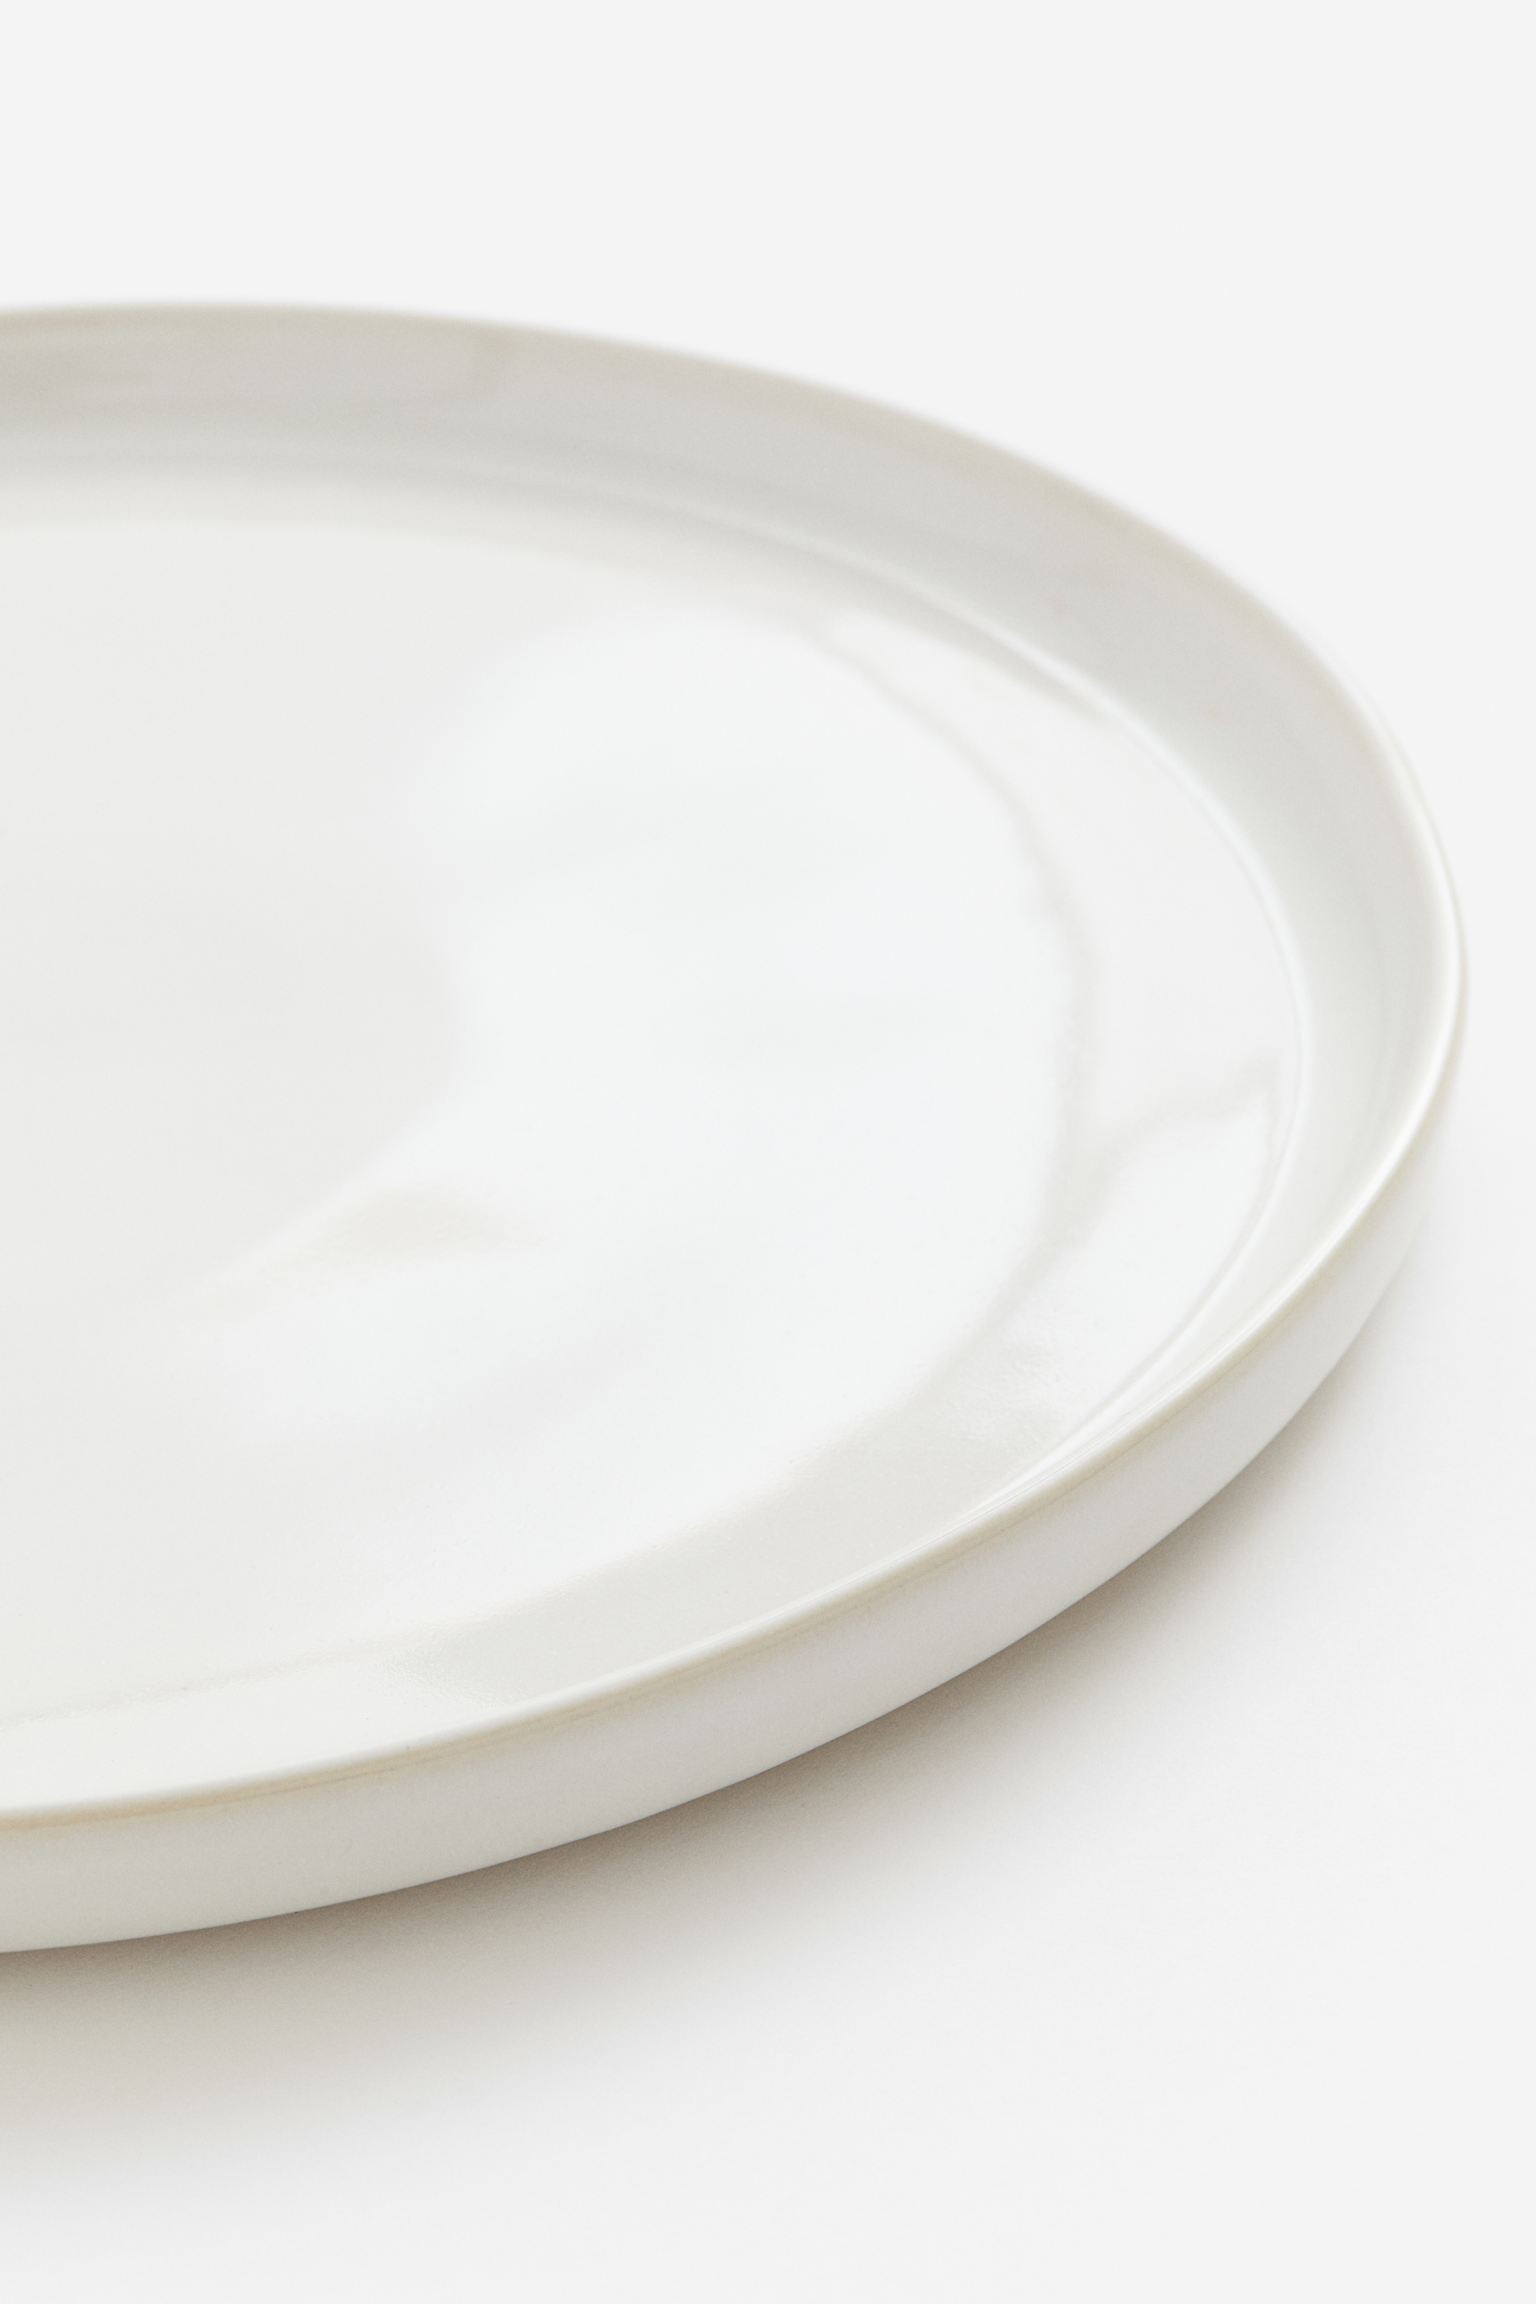 Велика керамічна тарілка, Натуральний білий/глянцевий